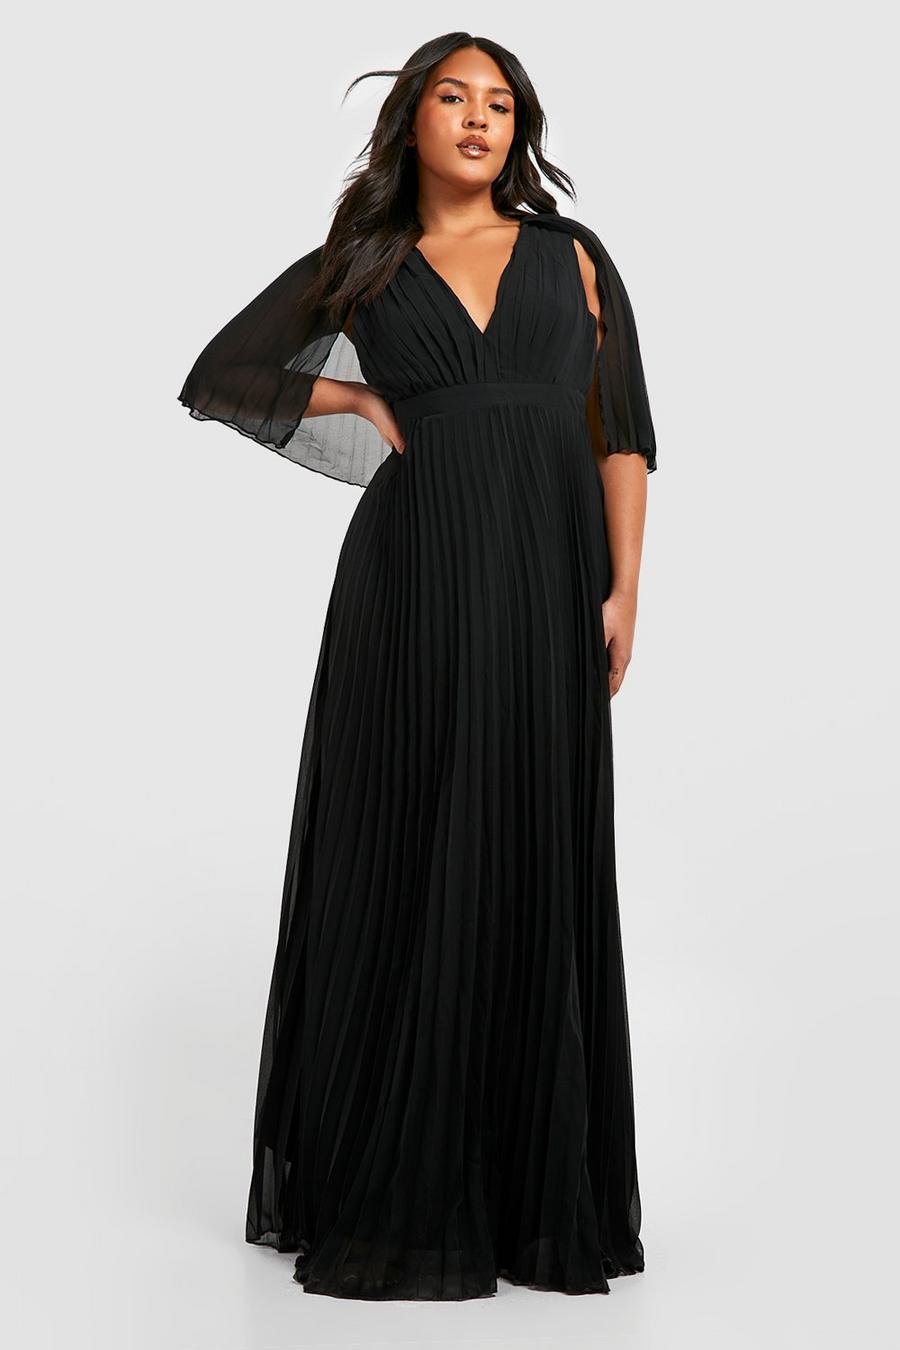 שחור negro שמלת מקסי שושבינה עם קפלים ושכמייה, מידות גדולות